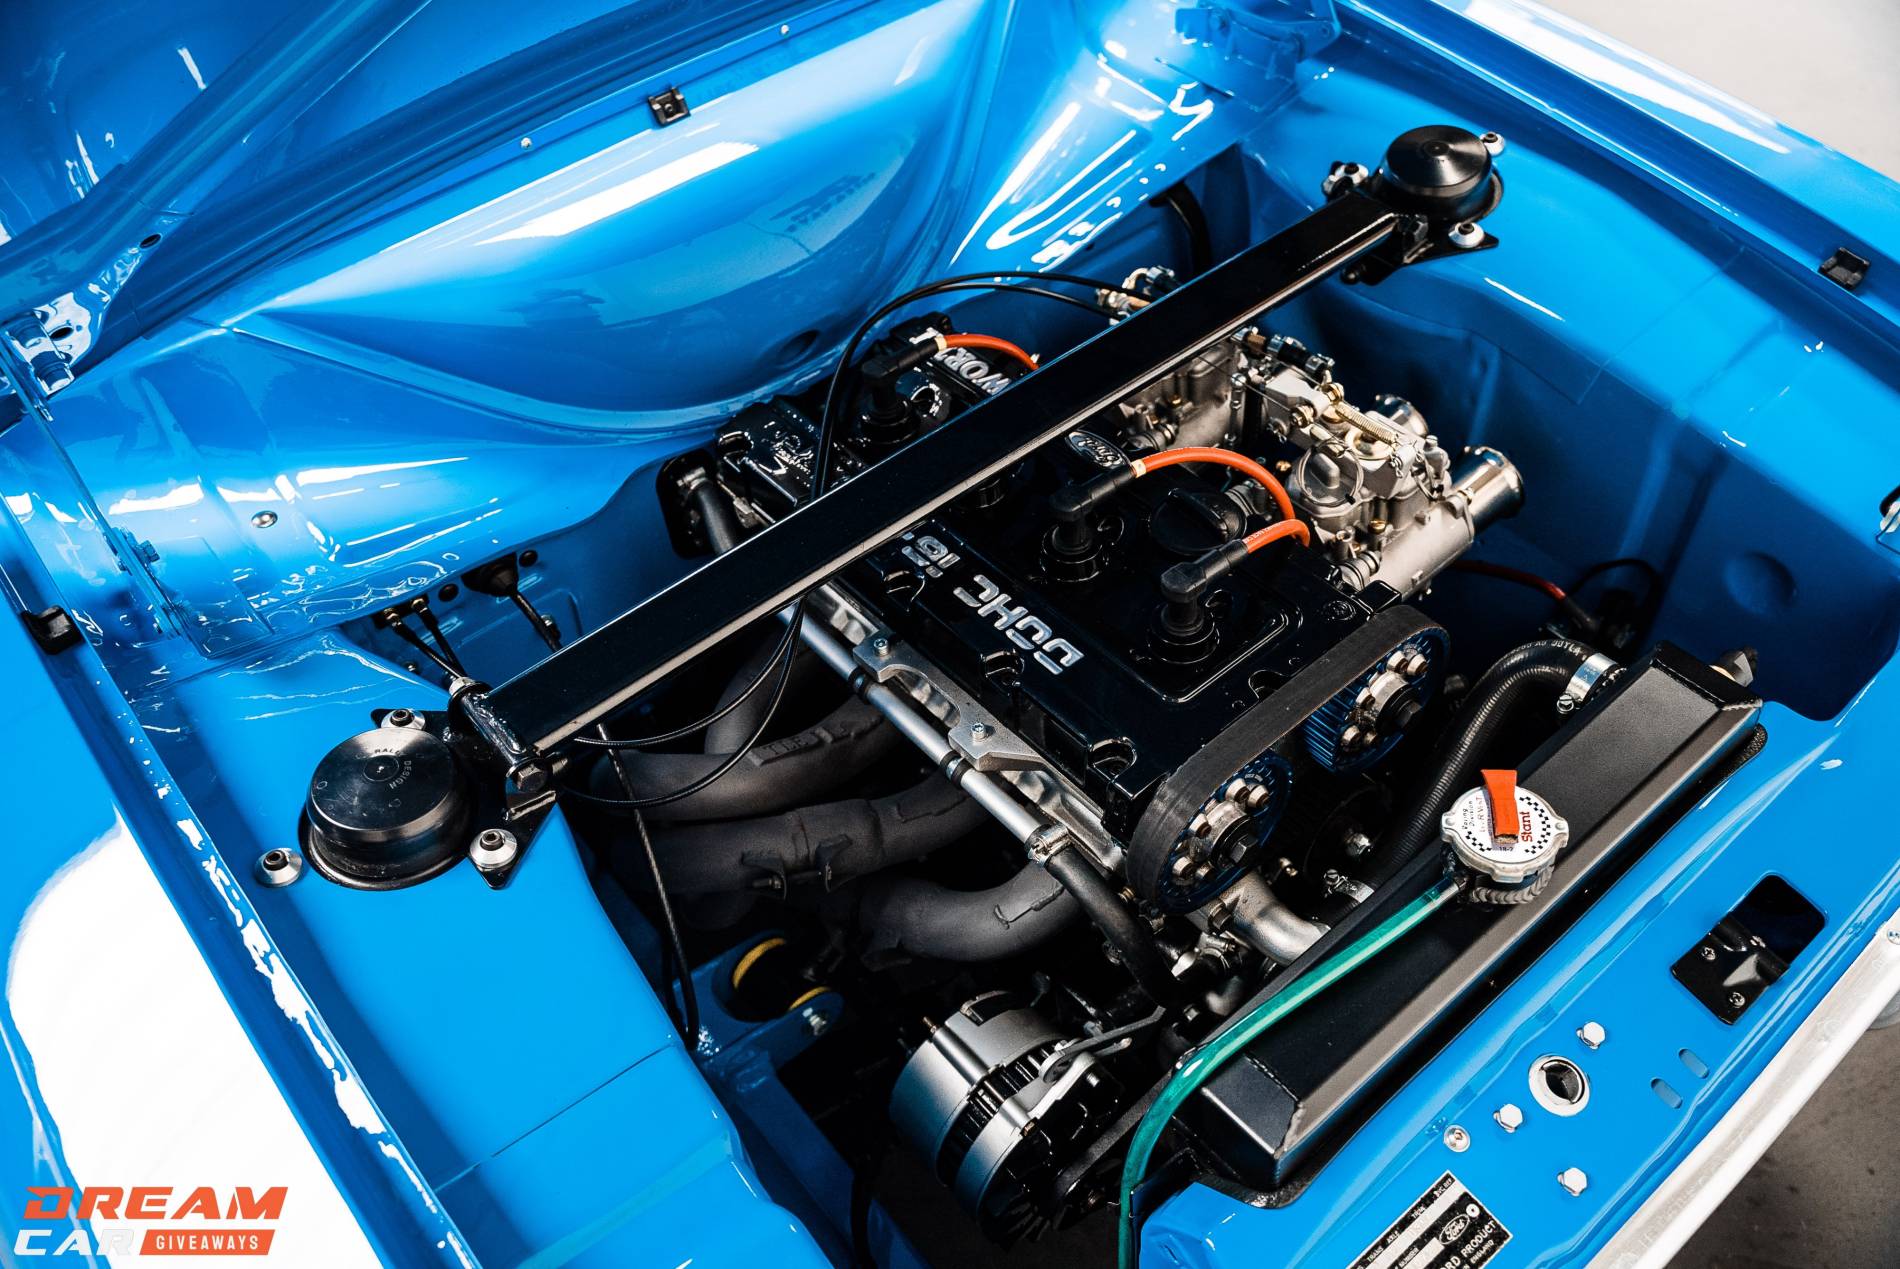 1969 MK1 Escort Cosworth